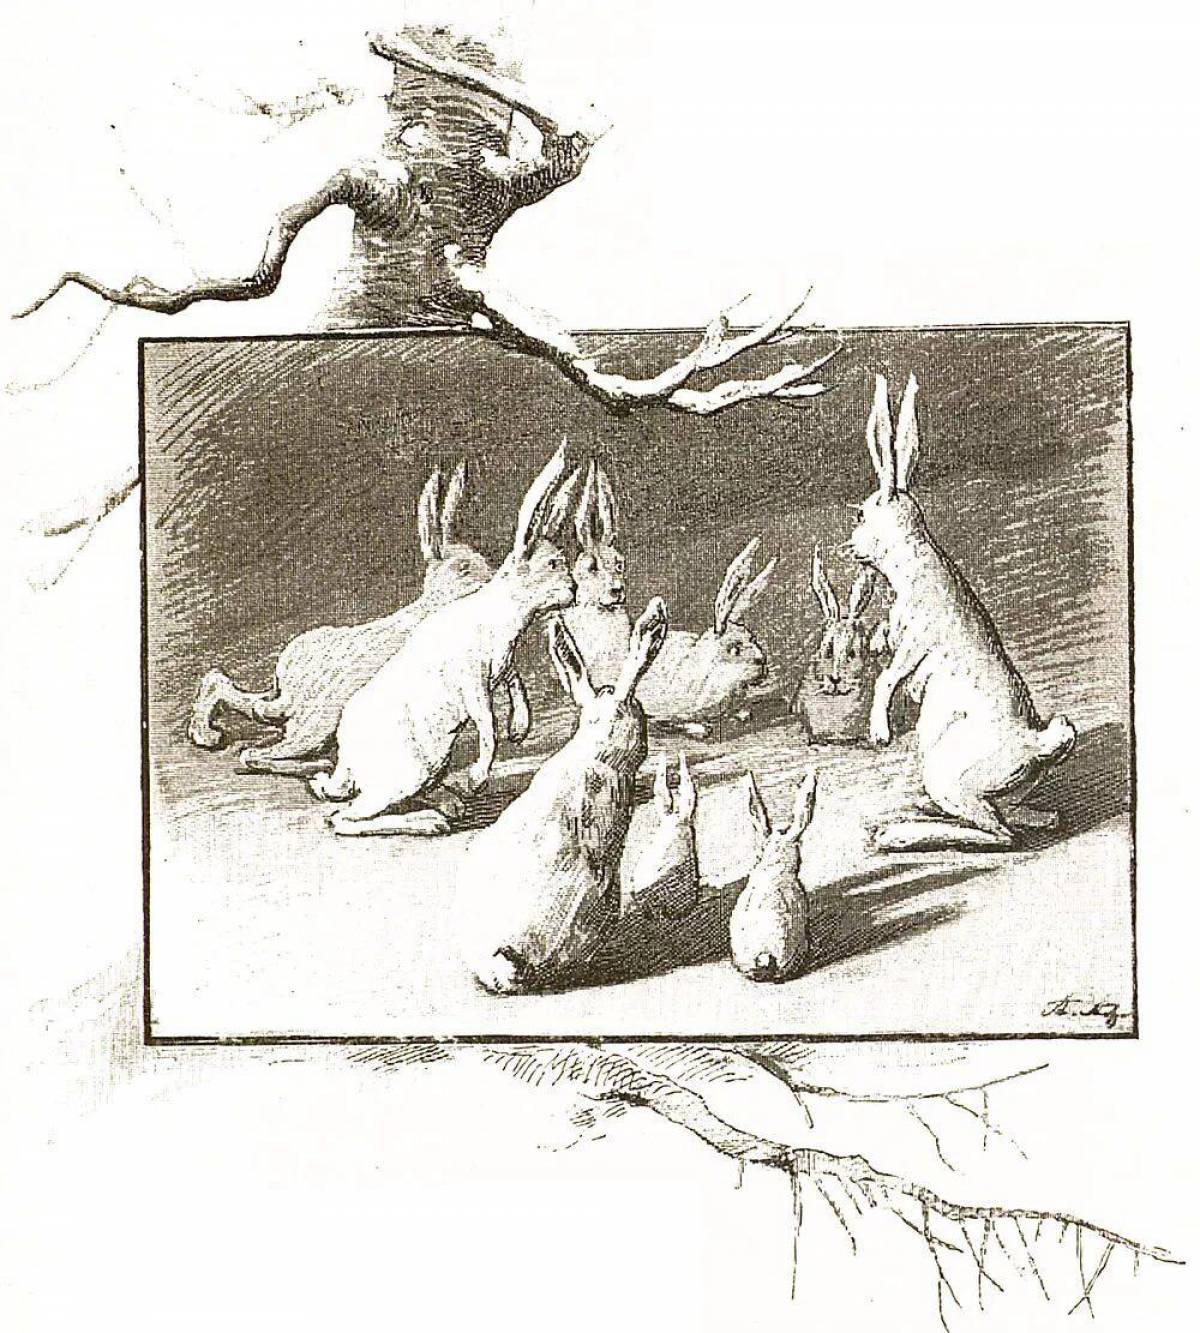 Сказка про храброго зайца длинные уши косые глаза короткий хвост #28